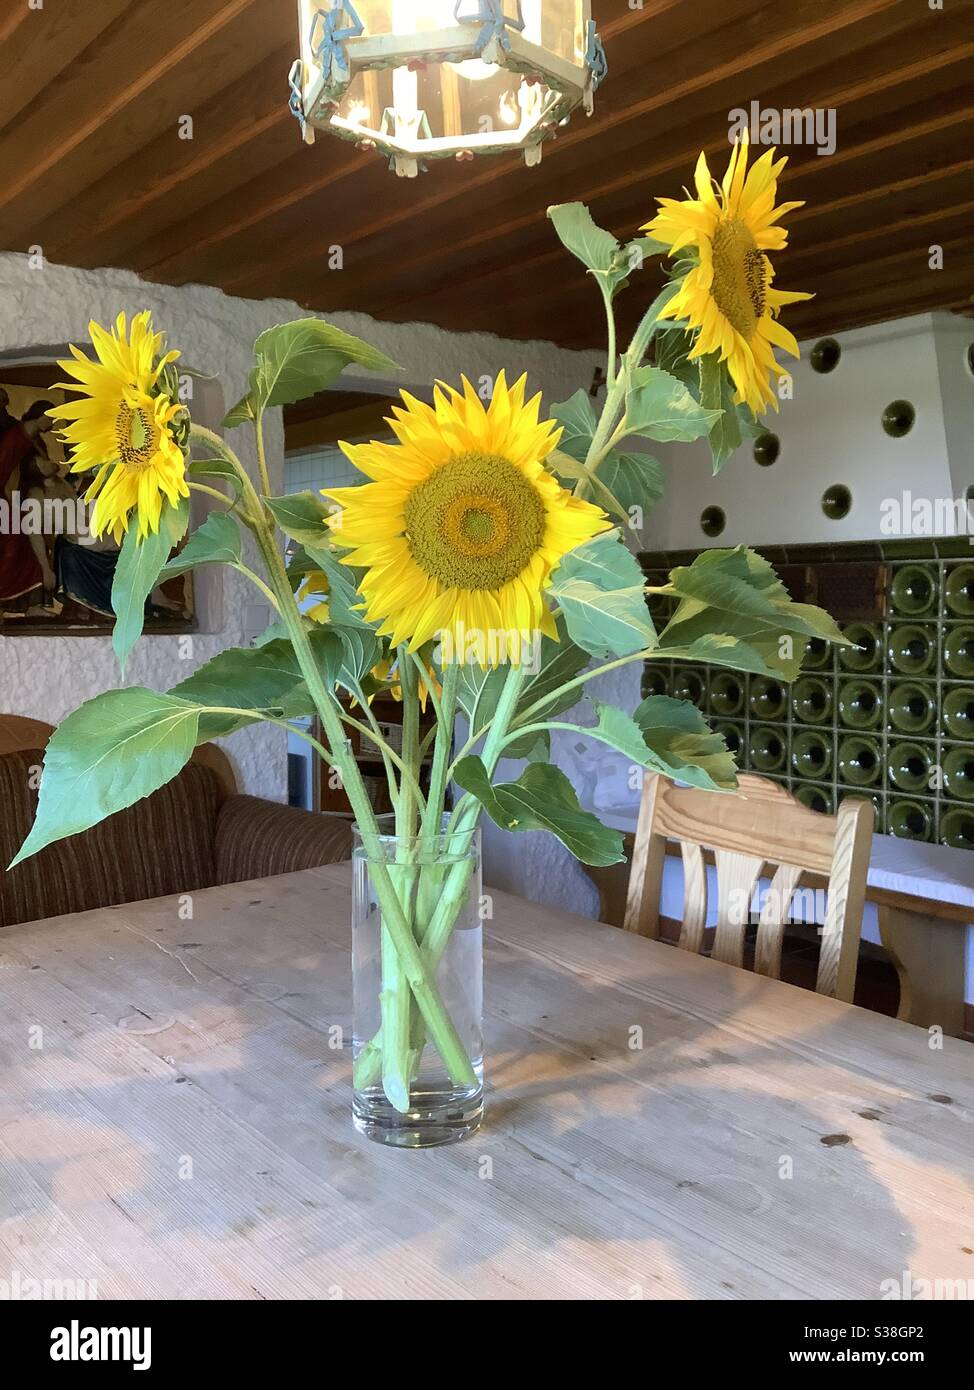 Vase mit geernteten blühenden Sonnenblumen auf Holztisch im alten bayerischen Bauernhaus Stockfoto